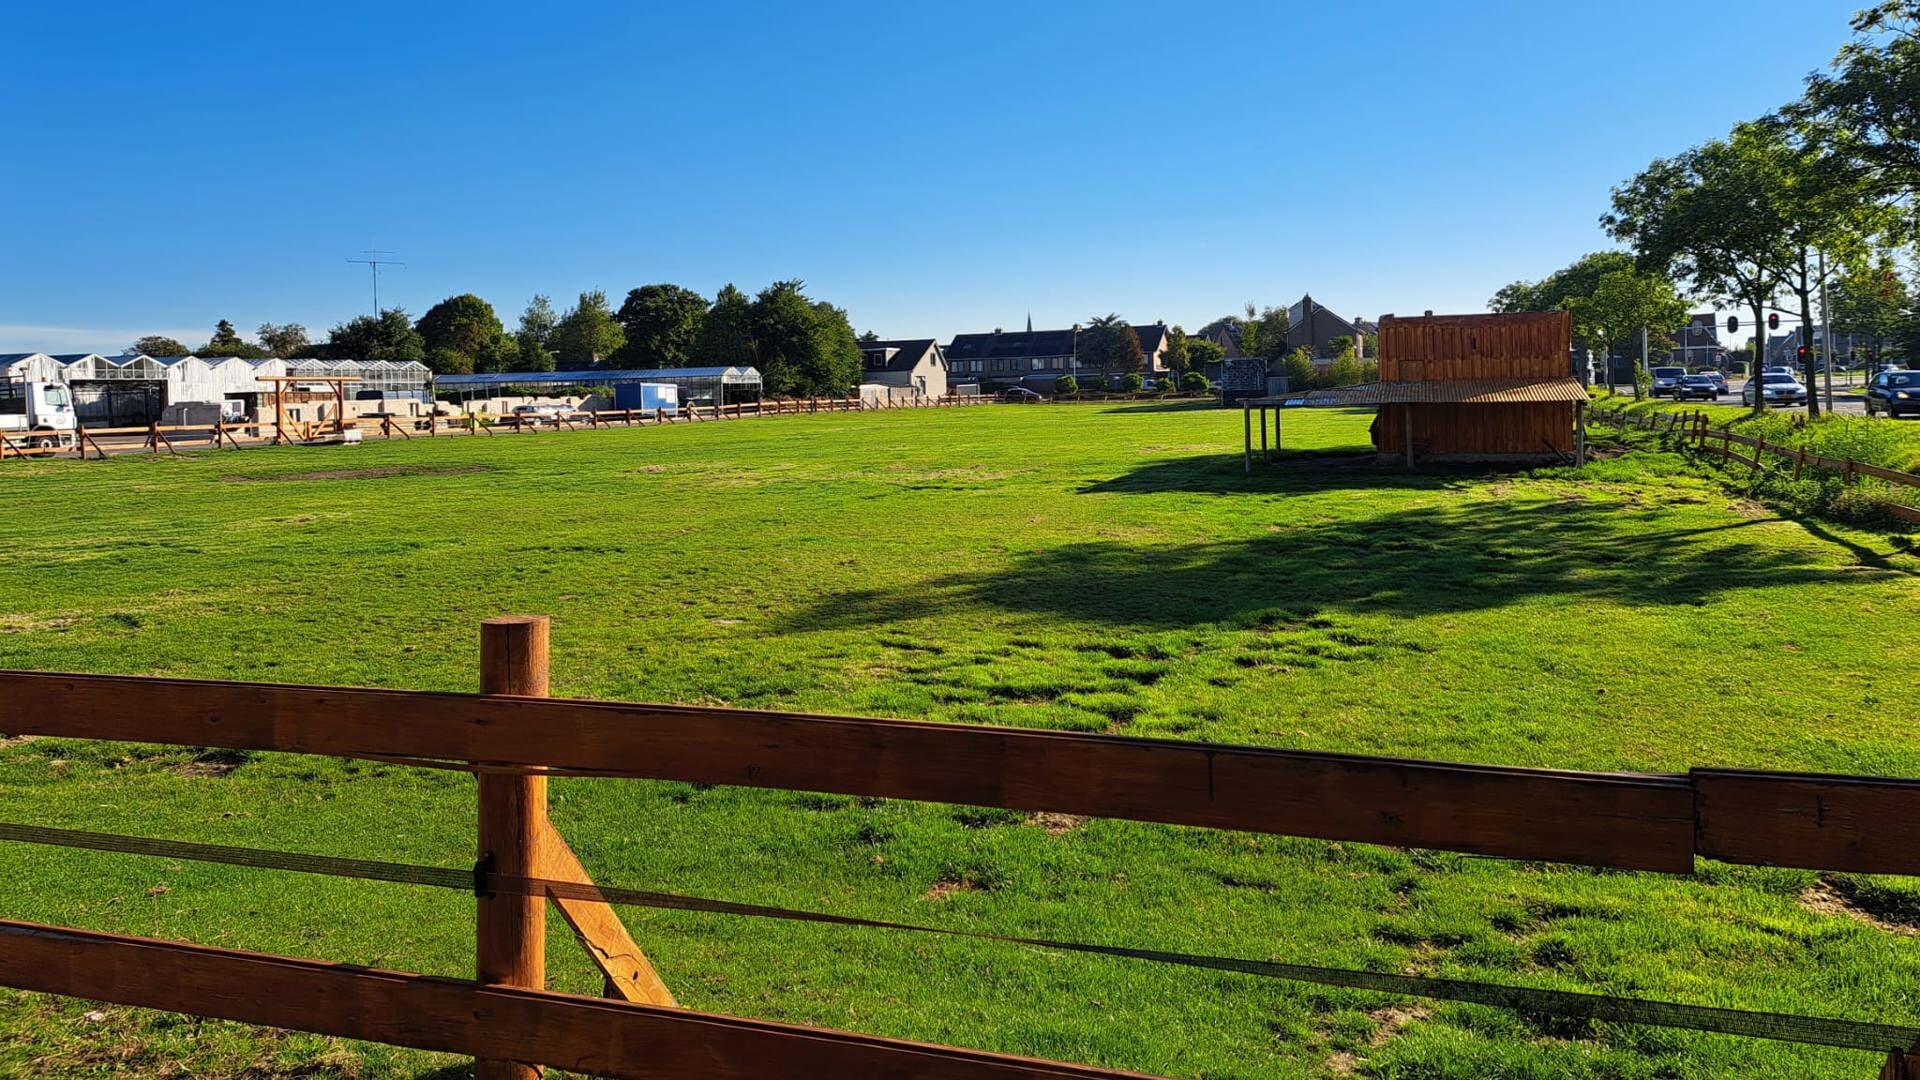 De ligging aan de rand van het dorp zou het terrein bij de Olsthoorn Ranch volgens CDA Westland geschikt maken voor woningen, vooral voor starters en gezinnen. 